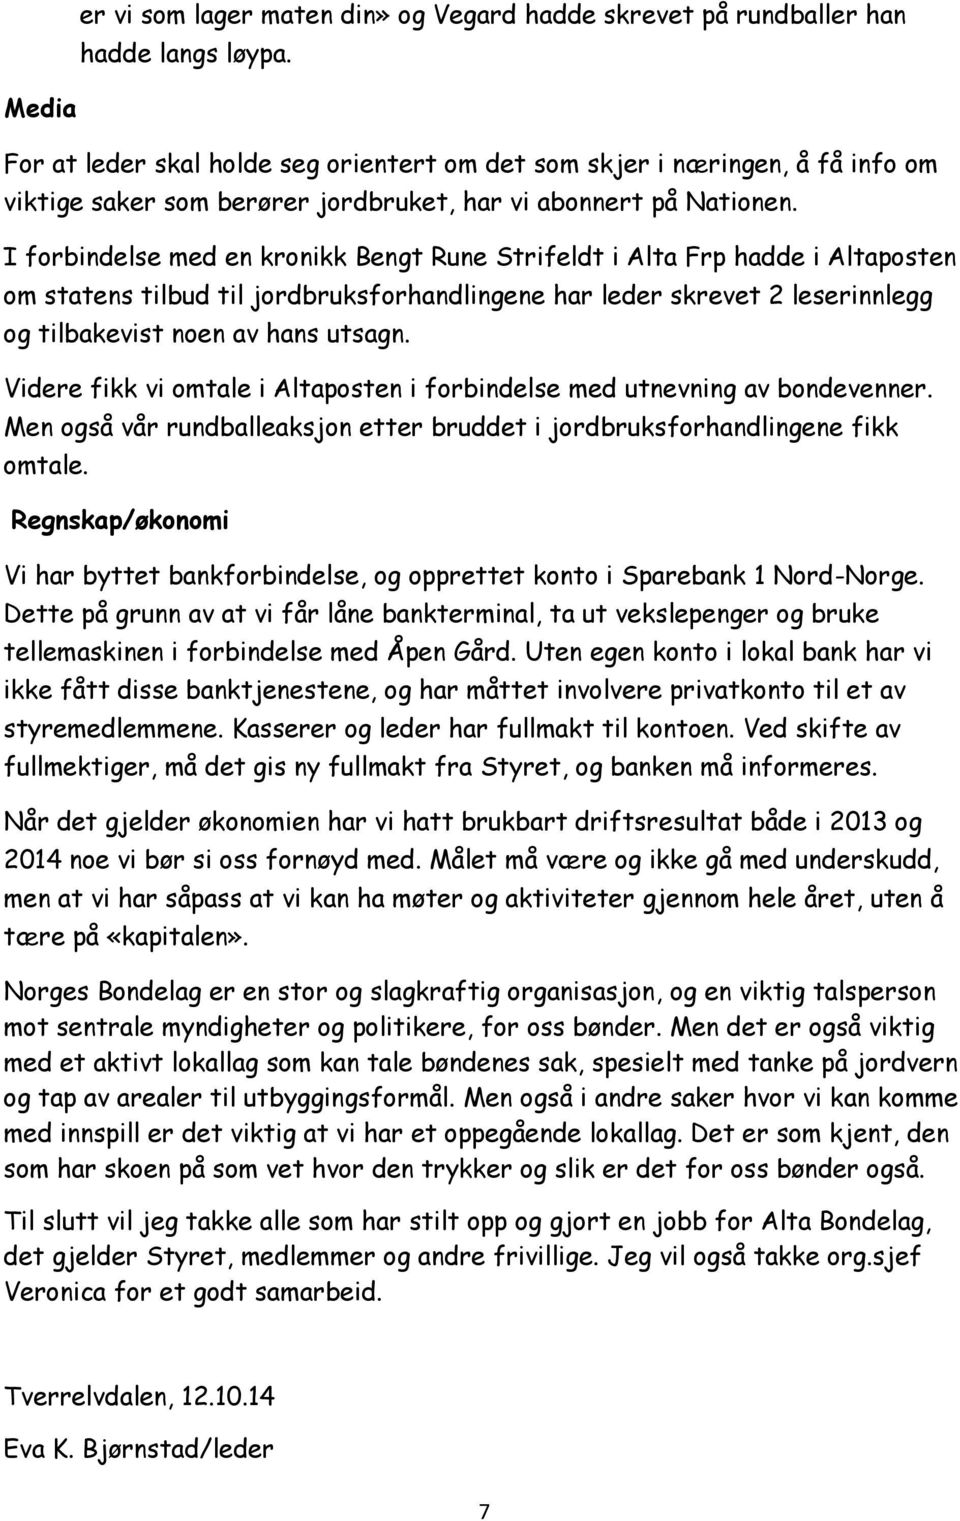 I forbindelse med en kronikk Bengt Rune Strifeldt i Alta Frp hadde i Altaposten om statens tilbud til jordbruksforhandlingene har leder skrevet 2 leserinnlegg og tilbakevist noen av hans utsagn.